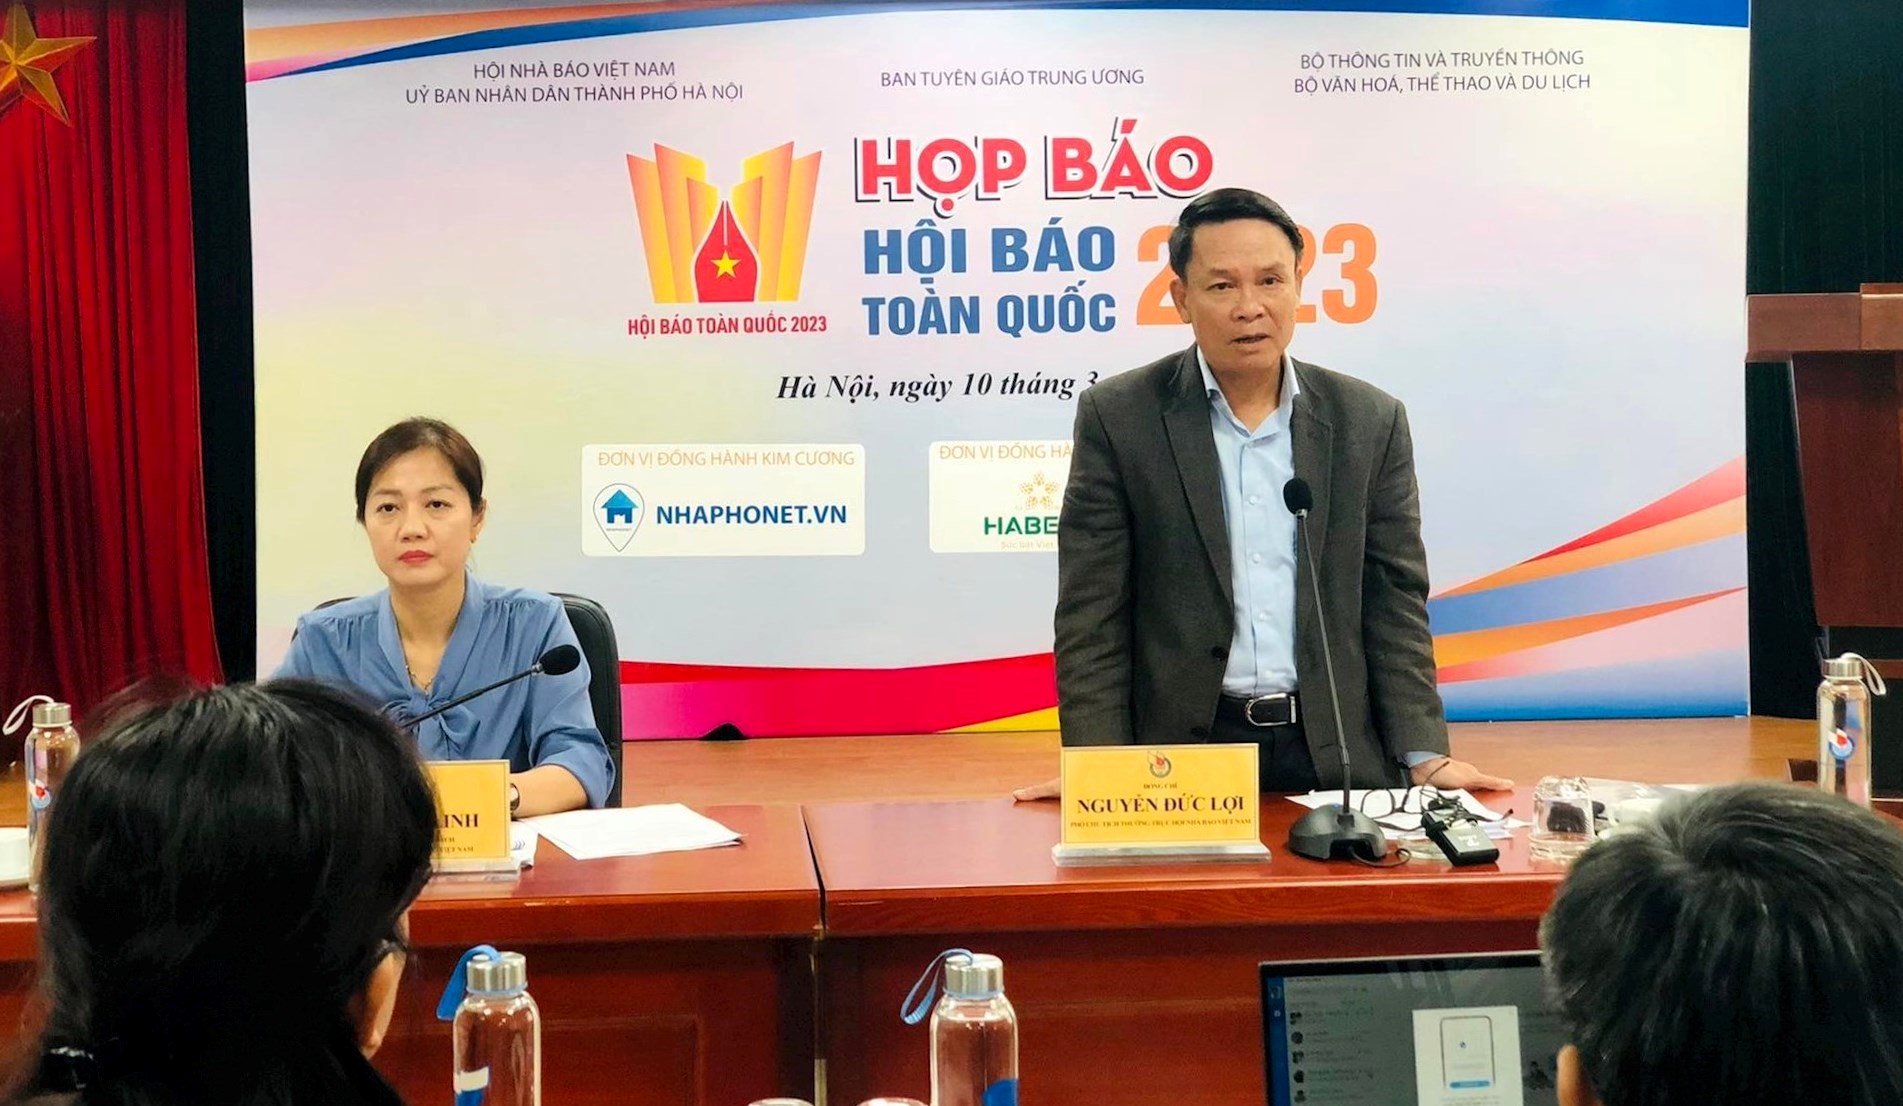 Phó Chủ tịch Thường trực Hội Nhà báo Việt Nam, Trưởng Ban Tổ chức Hội Báo toàn quốc 2023 Nguyễn Đức Lợi phát biểu tại buổi họp báo